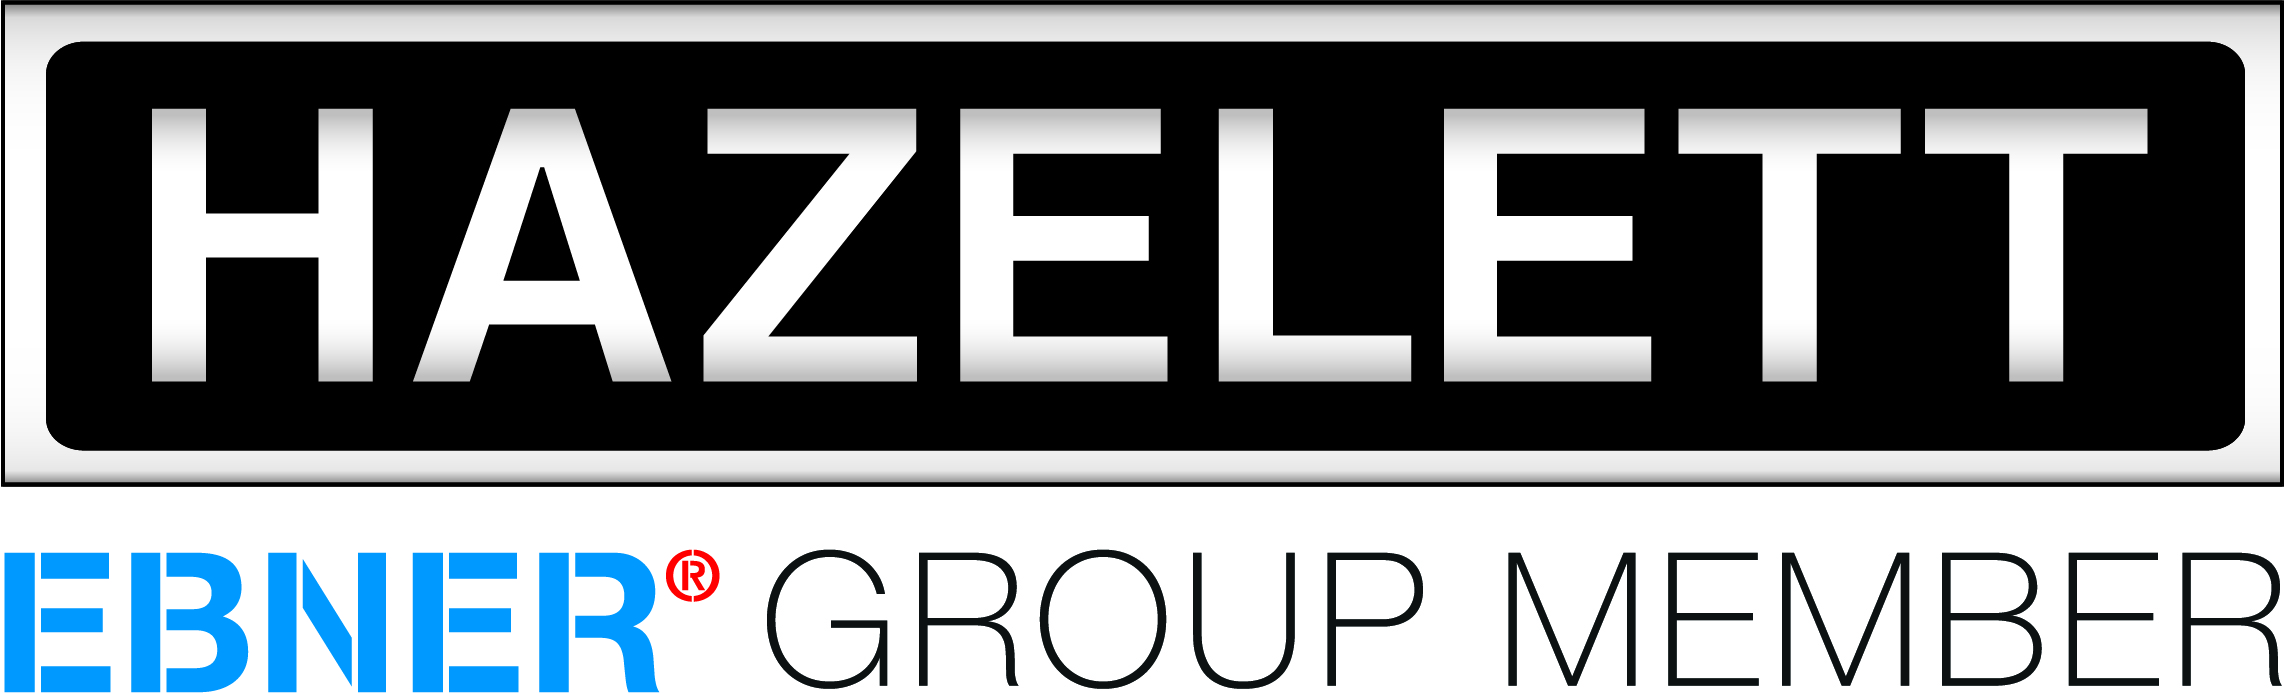 Hazelett - Ebner Group Member Logo